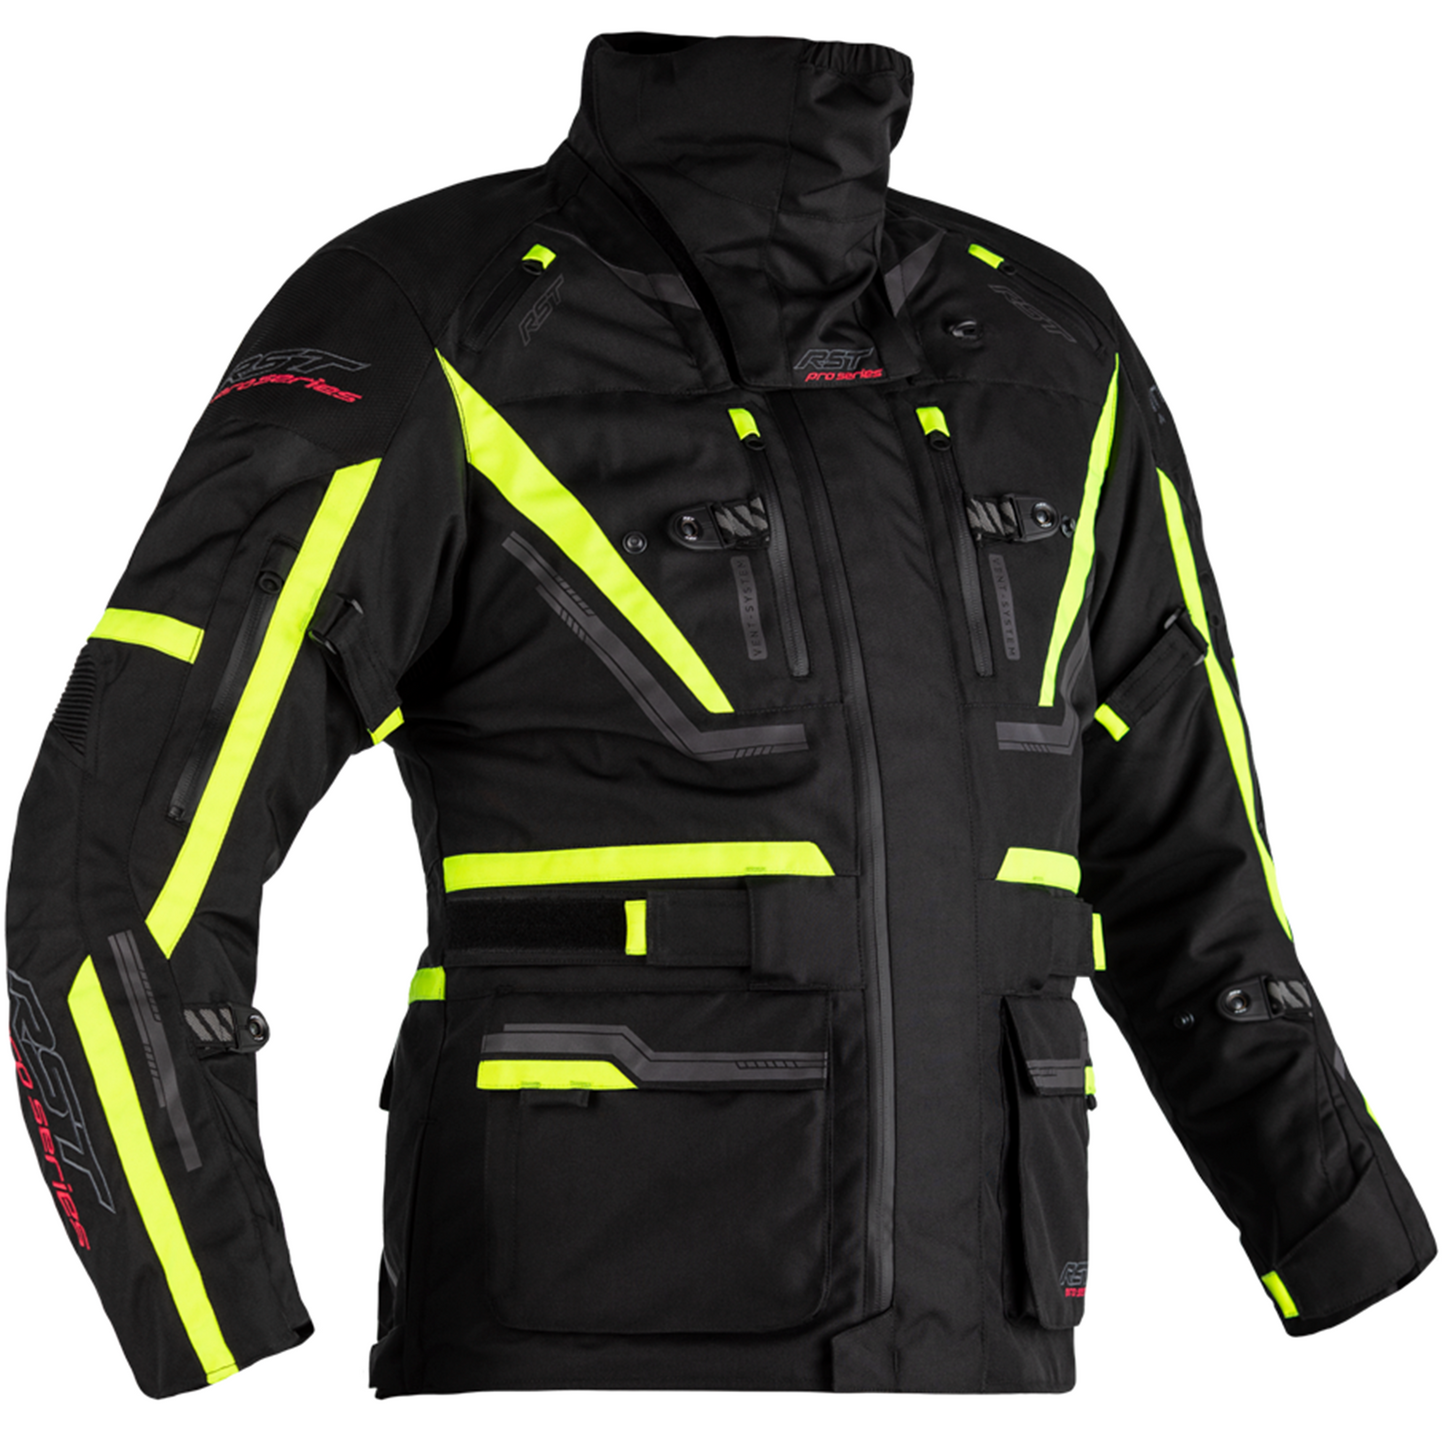 RST Pro Series Paragon 6 Textile Jacket - Black/Flo Yellow